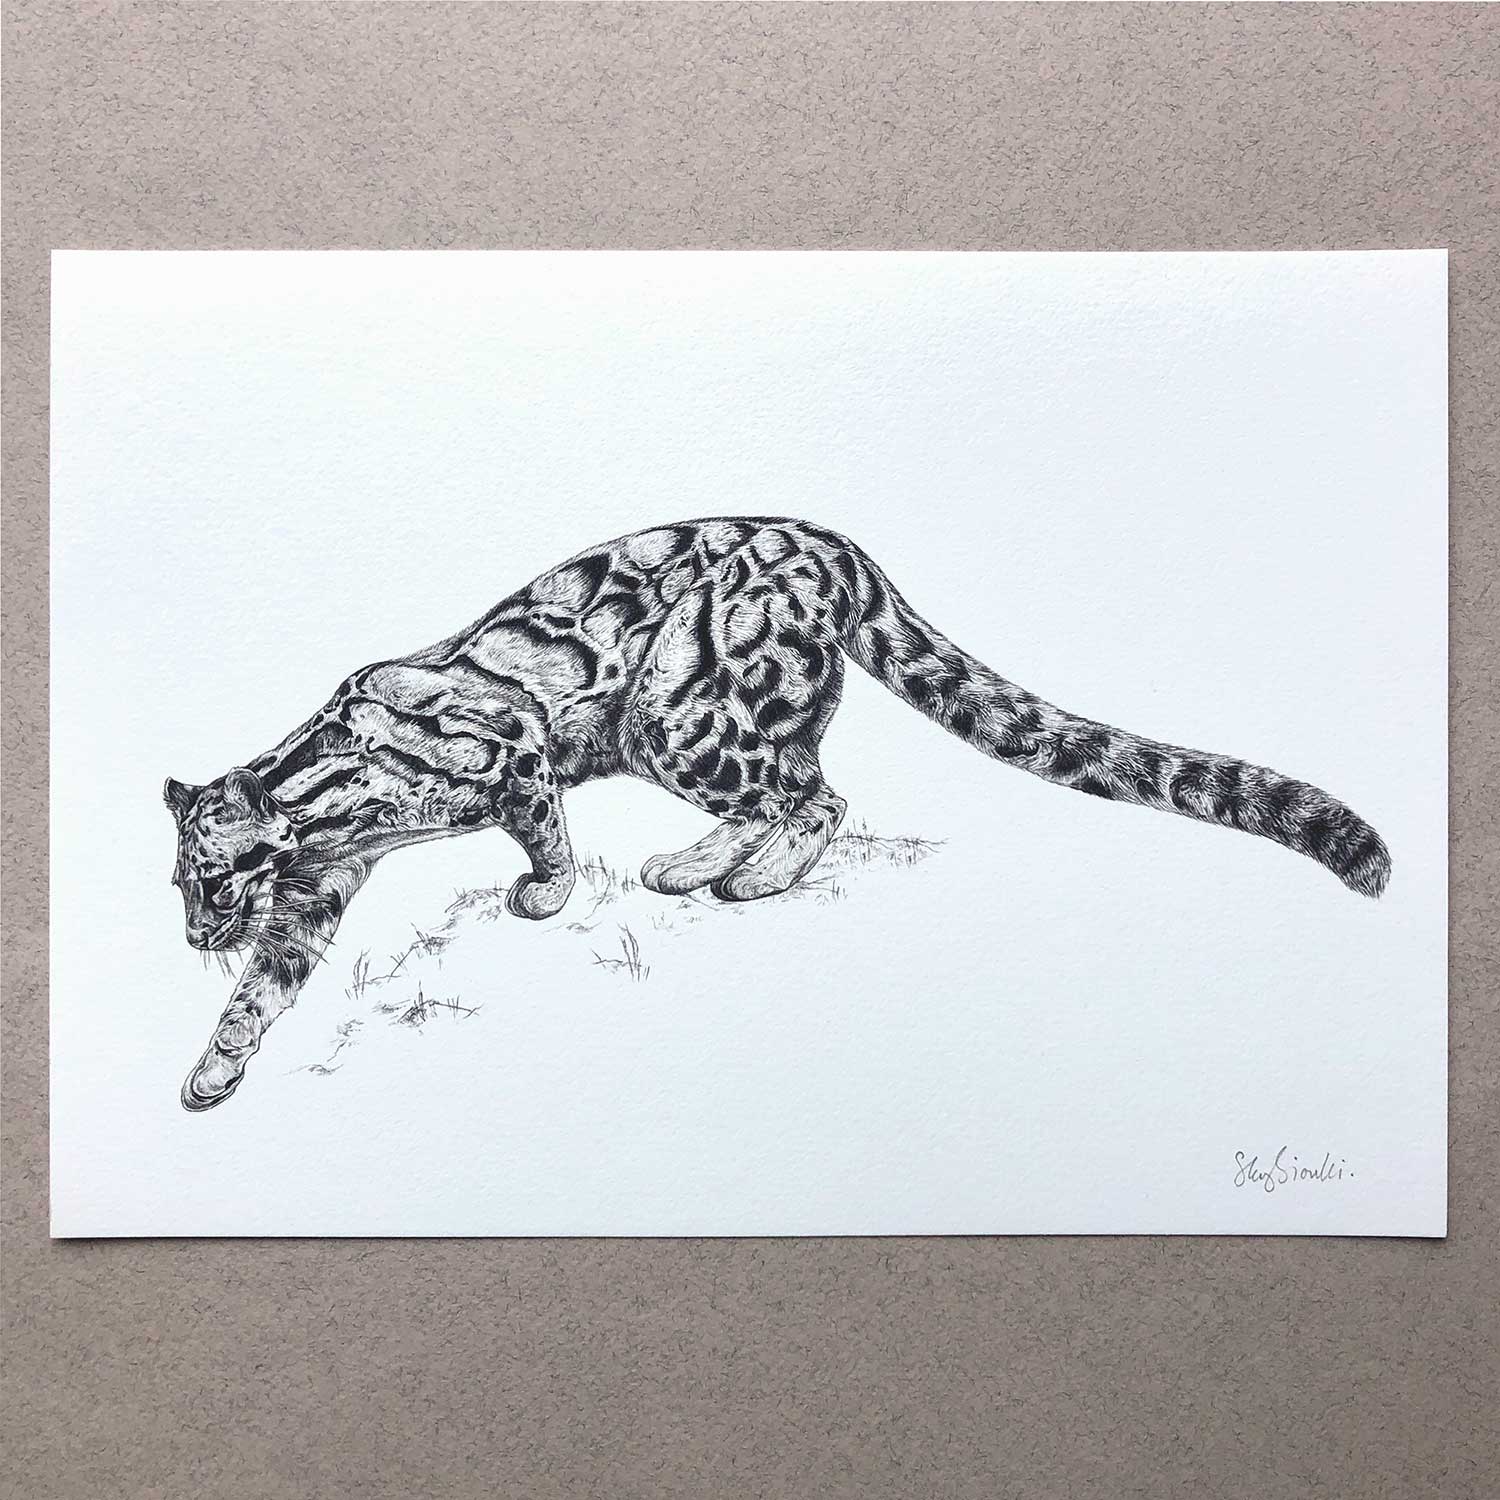 sky siouki Clouded Leopard A4 Art Print